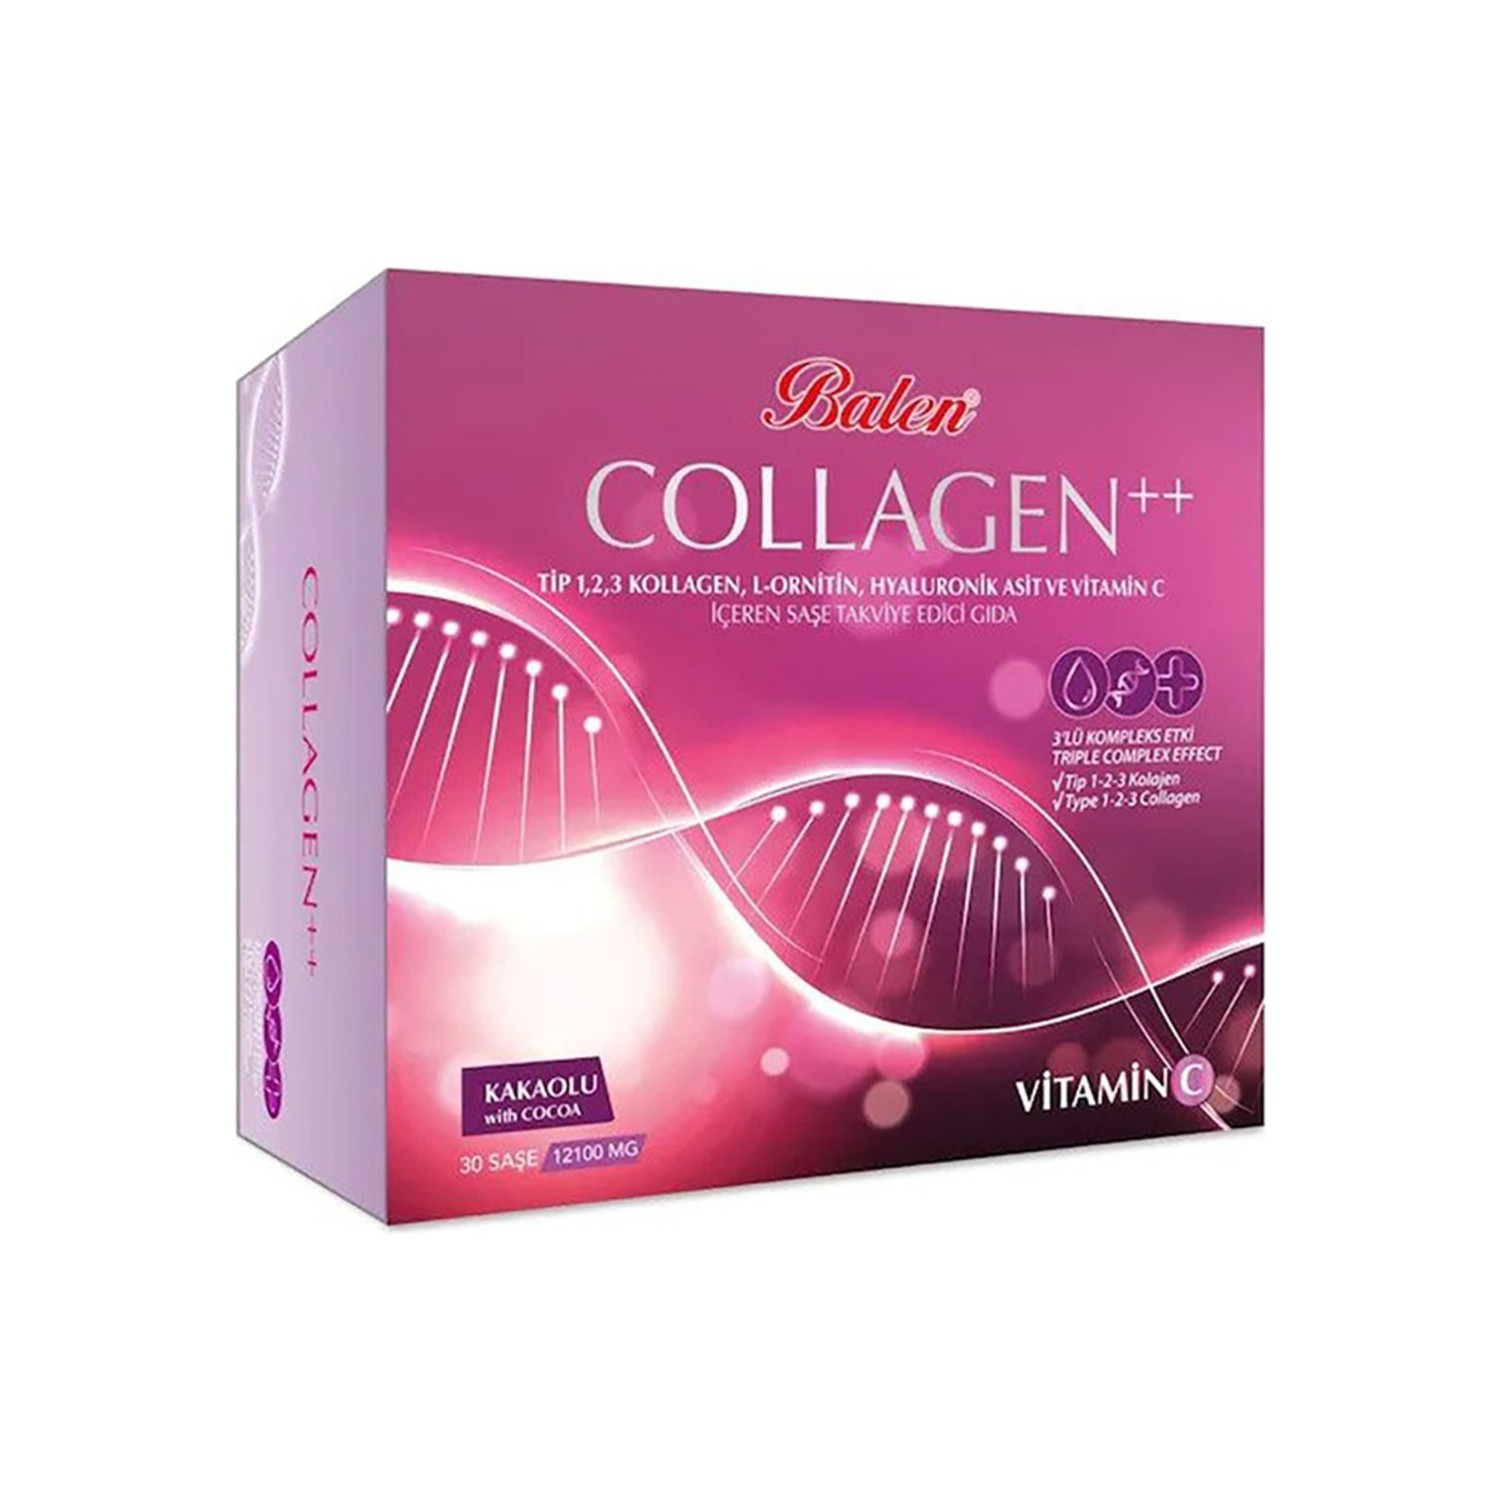 Пищевая добавка Balen Collagen 12100 мг 30 капсул пищевая добавка balen collagen 12100 мг 30 капсул